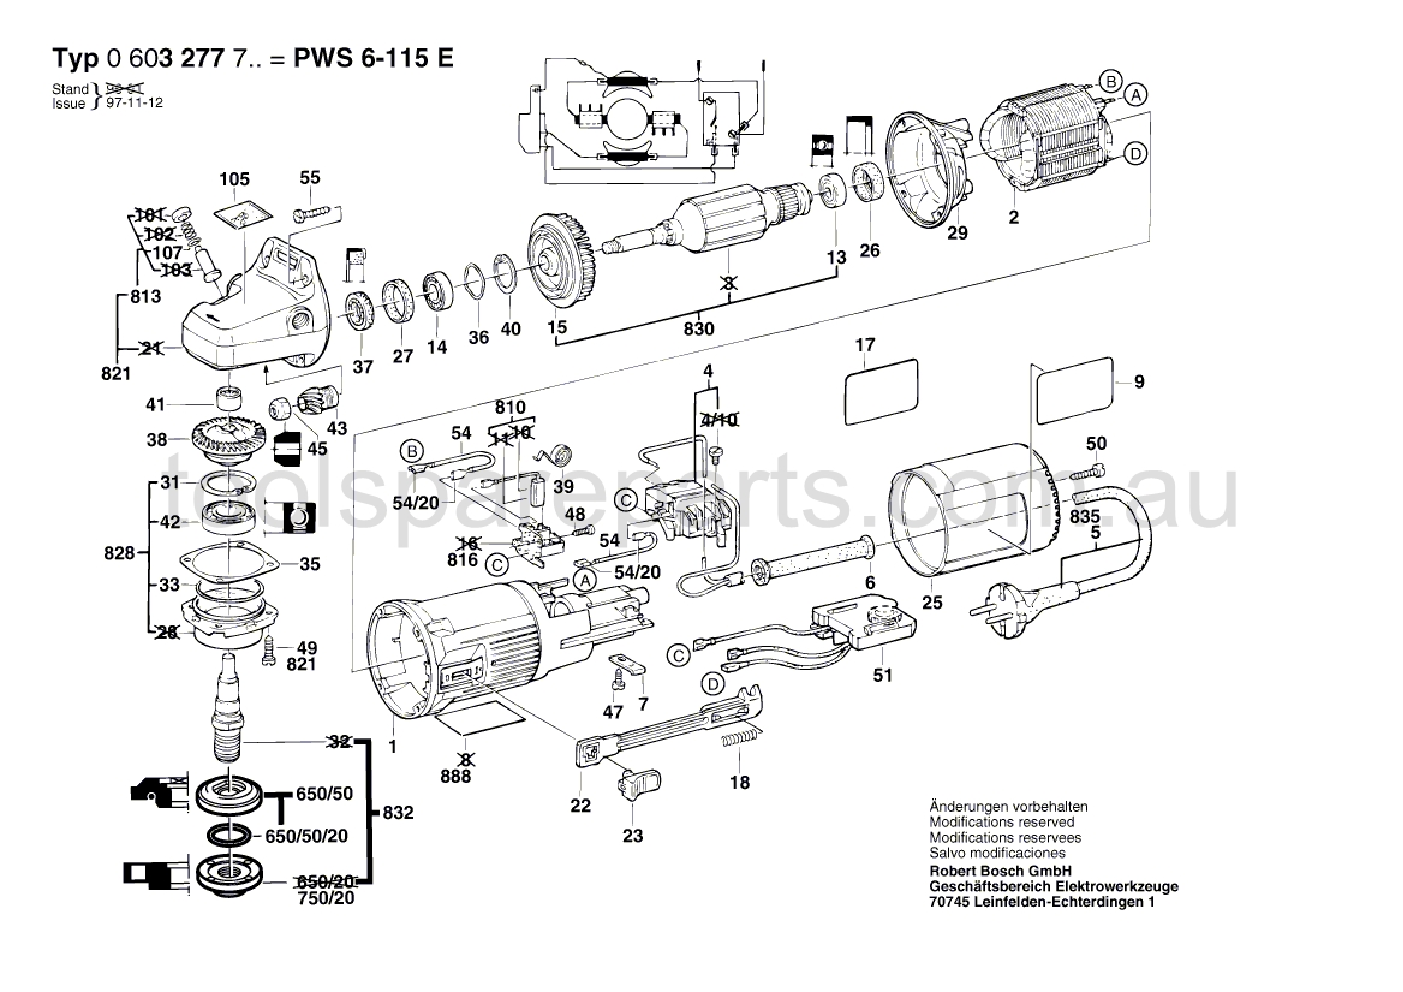 Bosch PWS 6-115 E 0603277737  Diagram 1